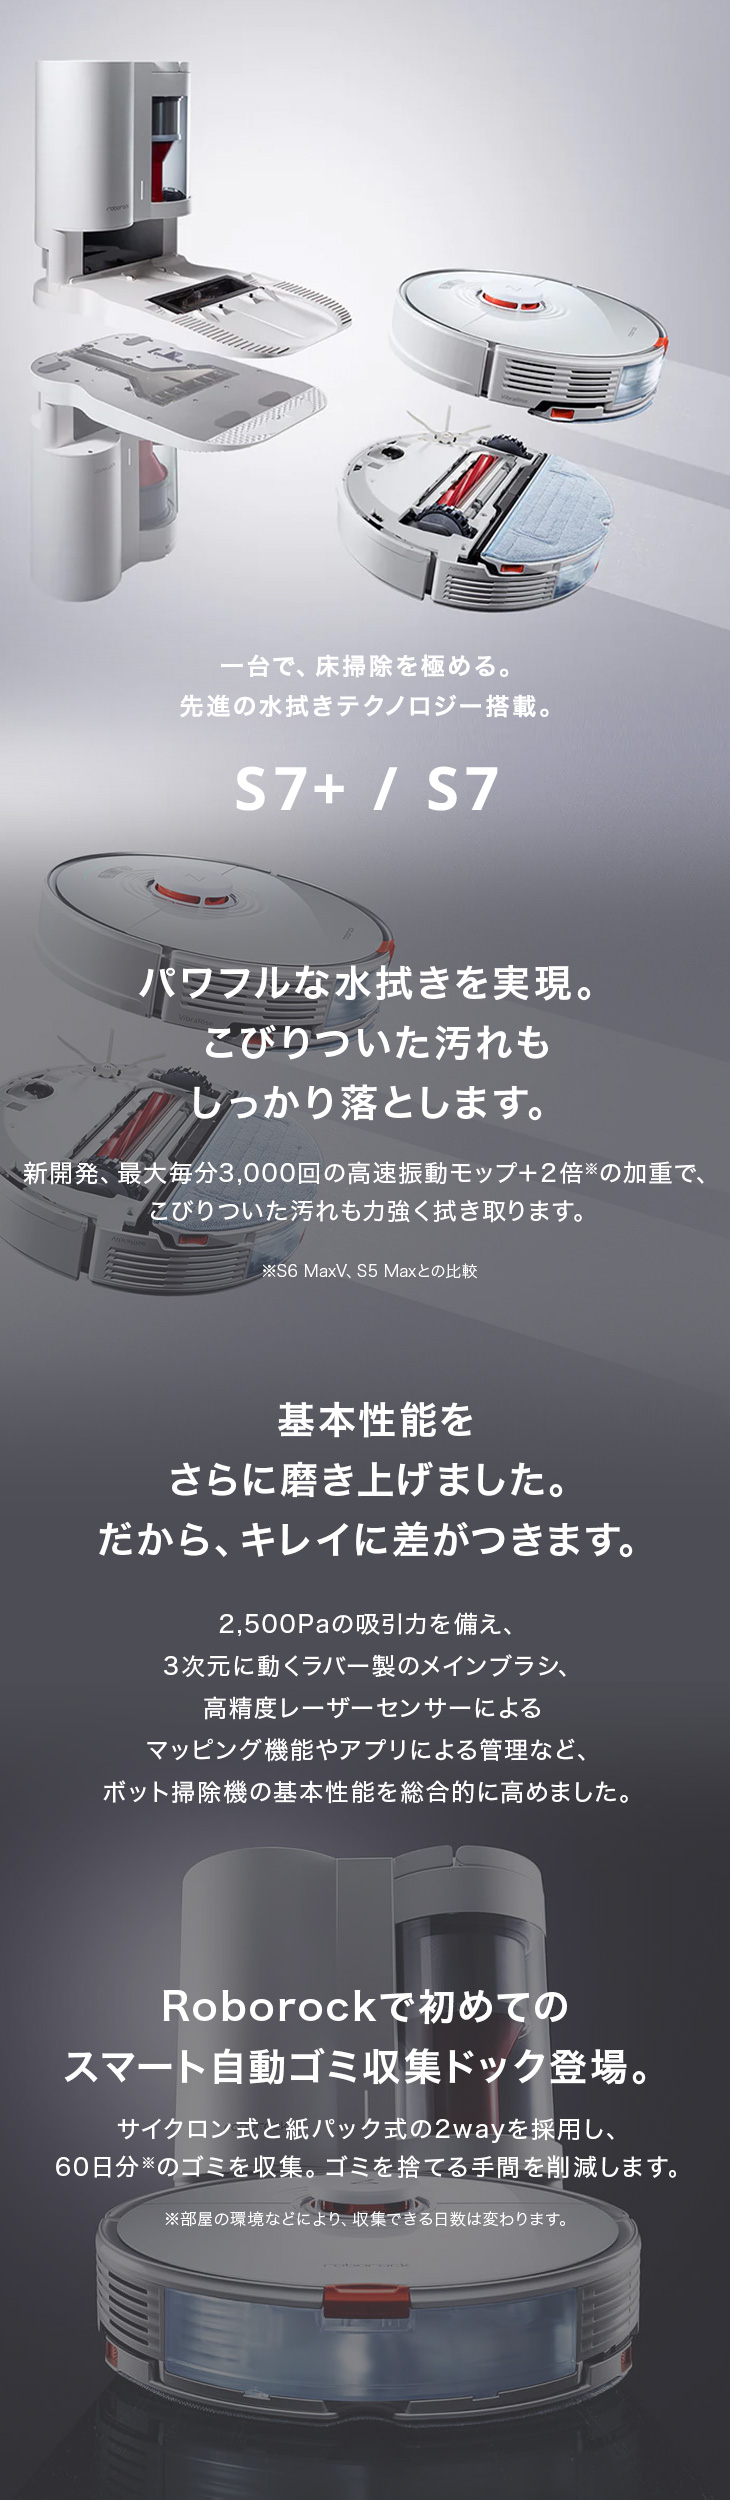 日本正規代理店品 ロボロック(Roborock) S7 白 純正アクセサリーセット 強力水拭き対応 高速振動モップ カーペット自動回避